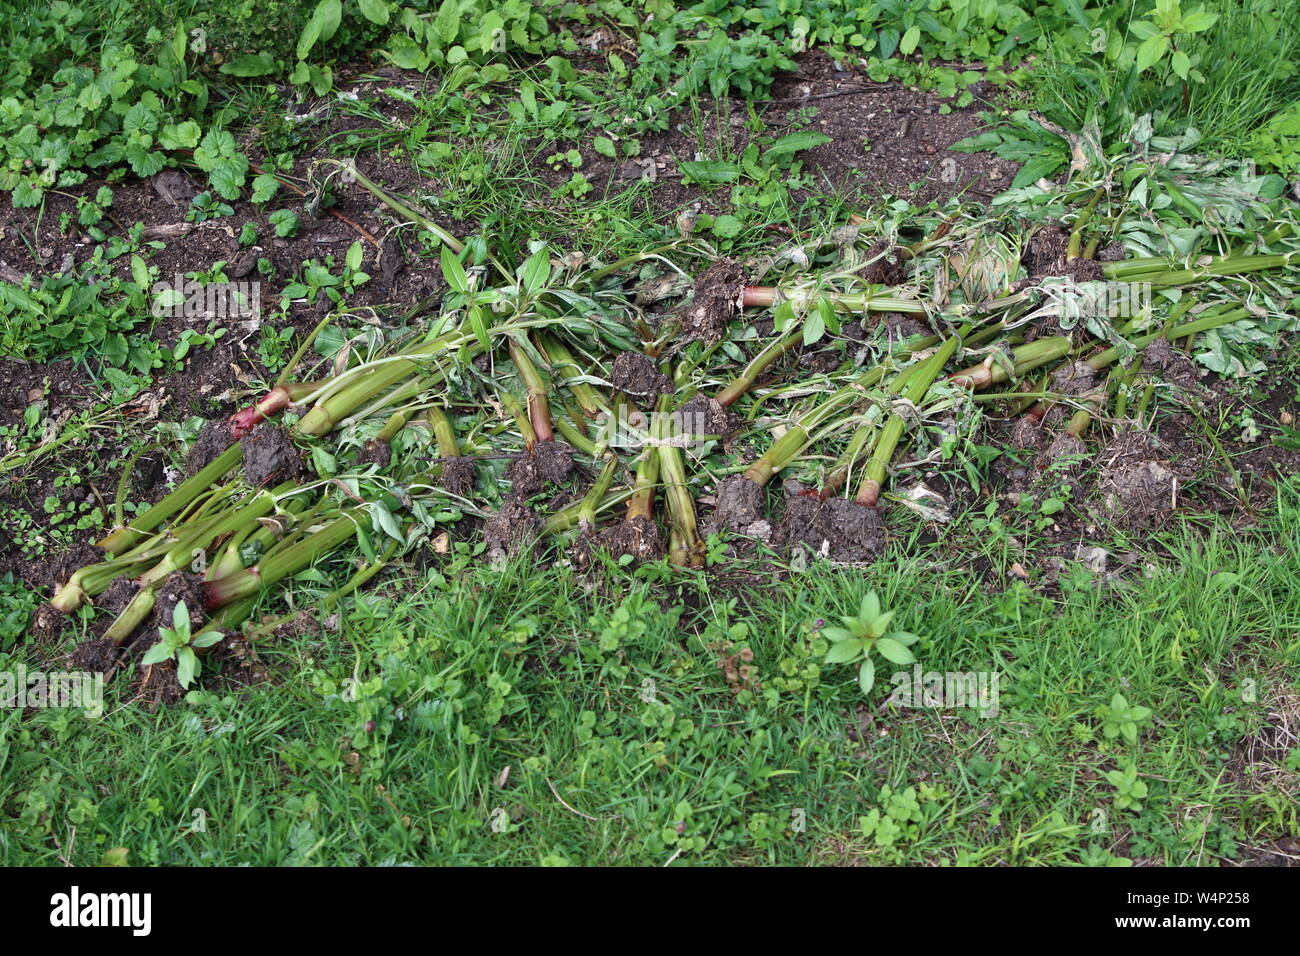 Pullled balsamine de l'Himalaya, cette espèce envahissante une plante étrangère à partir de l'époque victorienne, est distroyed et contrôlée par ici soulevée. Banque D'Images